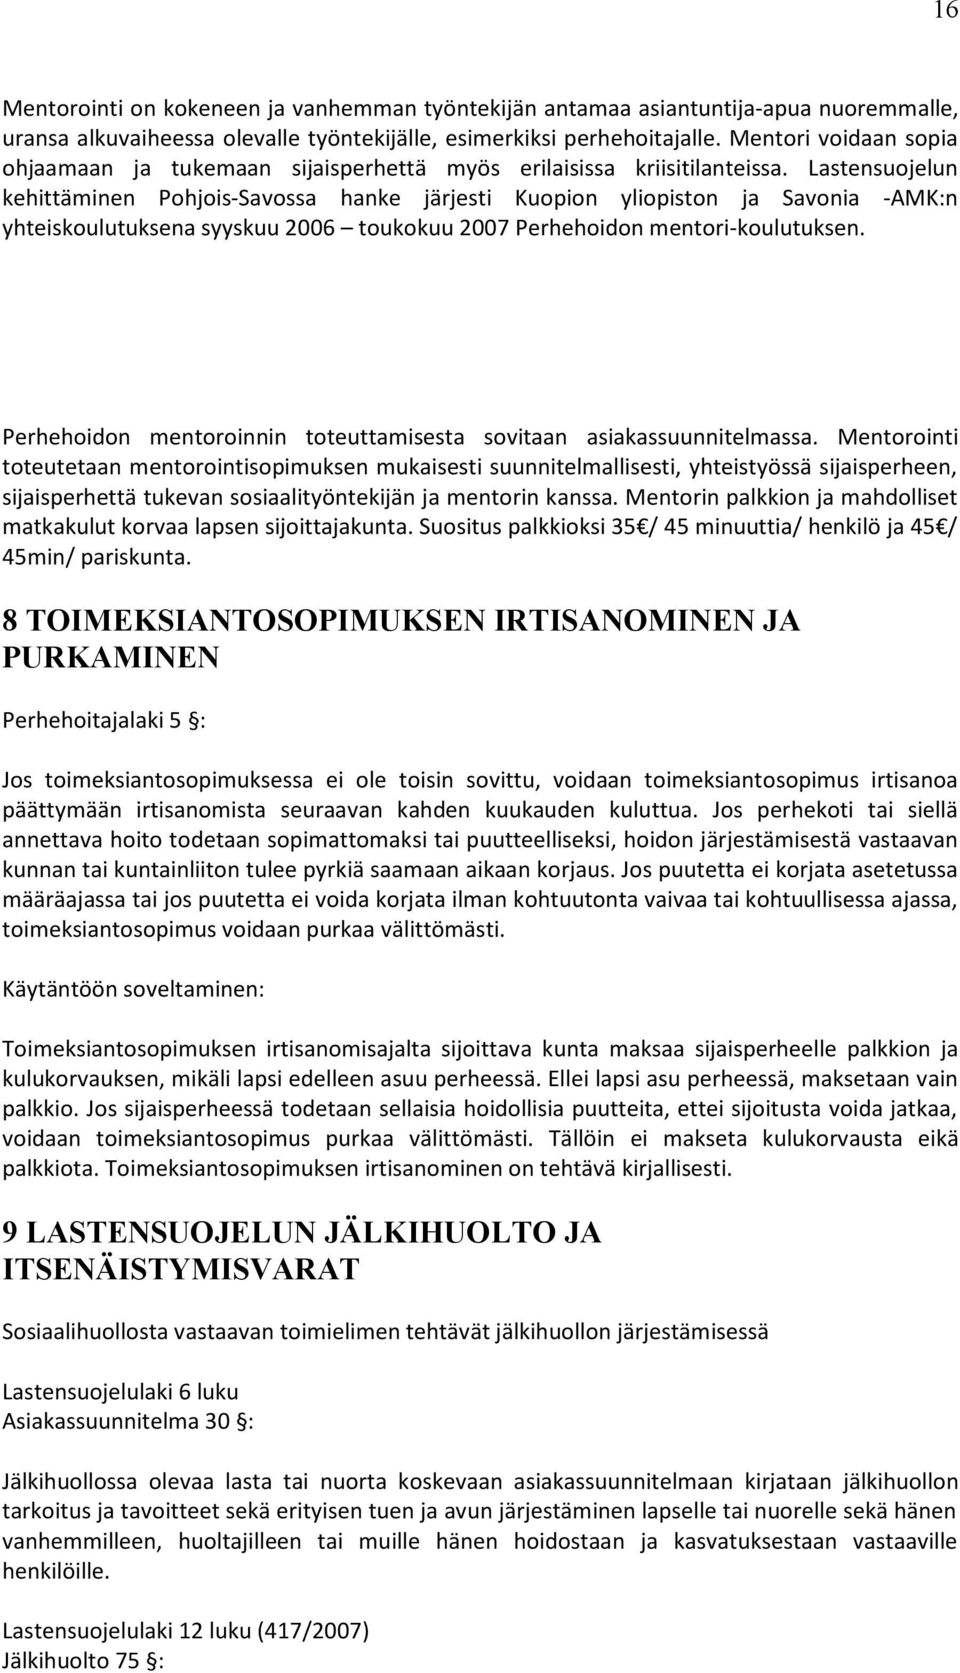 Lastensuojelun kehittäminen Pohjois Savossa hanke järjesti Kuopion yliopiston ja Savonia AMK:n yhteiskoulutuksena syyskuu 2006 toukokuu 2007 Perhehoidon mentori koulutuksen.